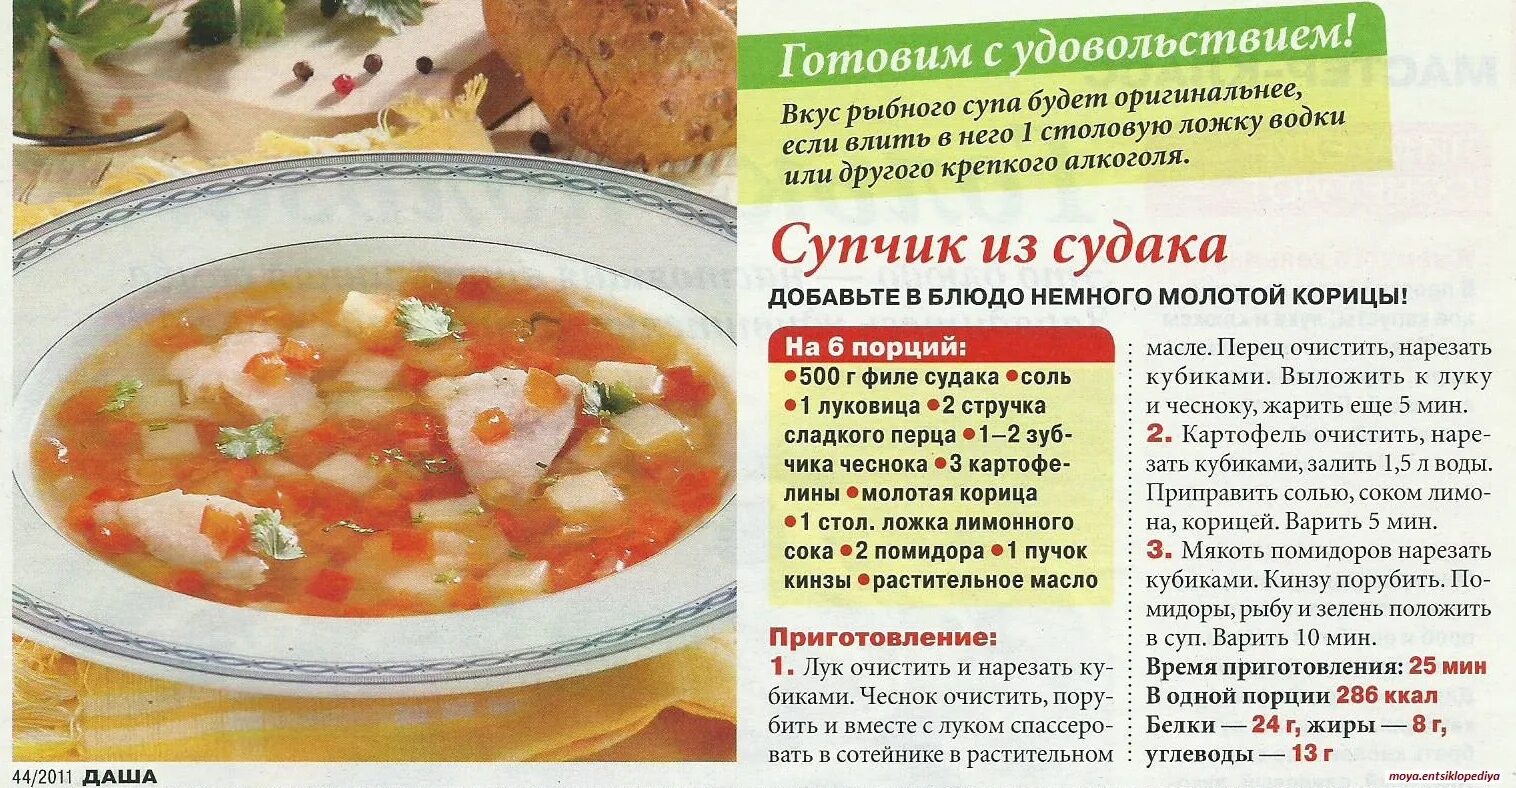 Рецепты супов в картинках. Супы для похудения рецепты в картинках с описанием. Рецепт супа распечатать. Рецепт супа доклад.